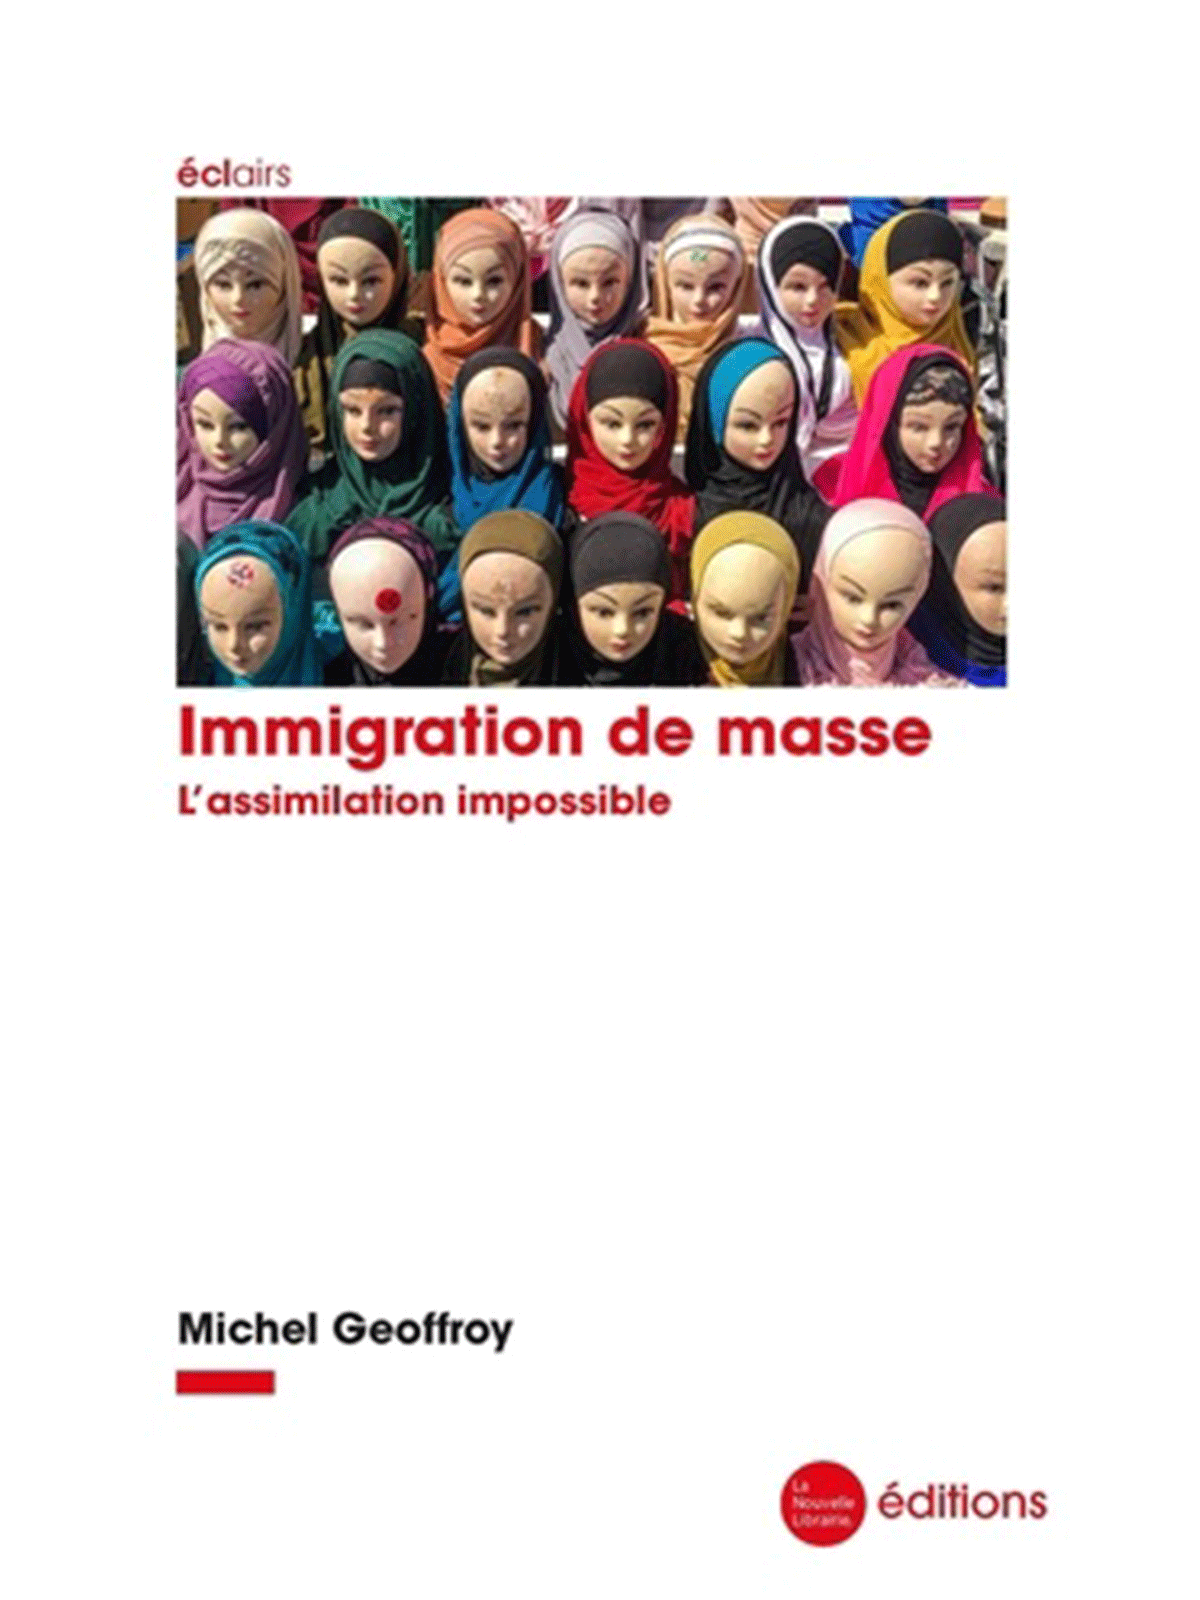 Michel Geoffroy : Immigration de masse. L'assimilation impossible